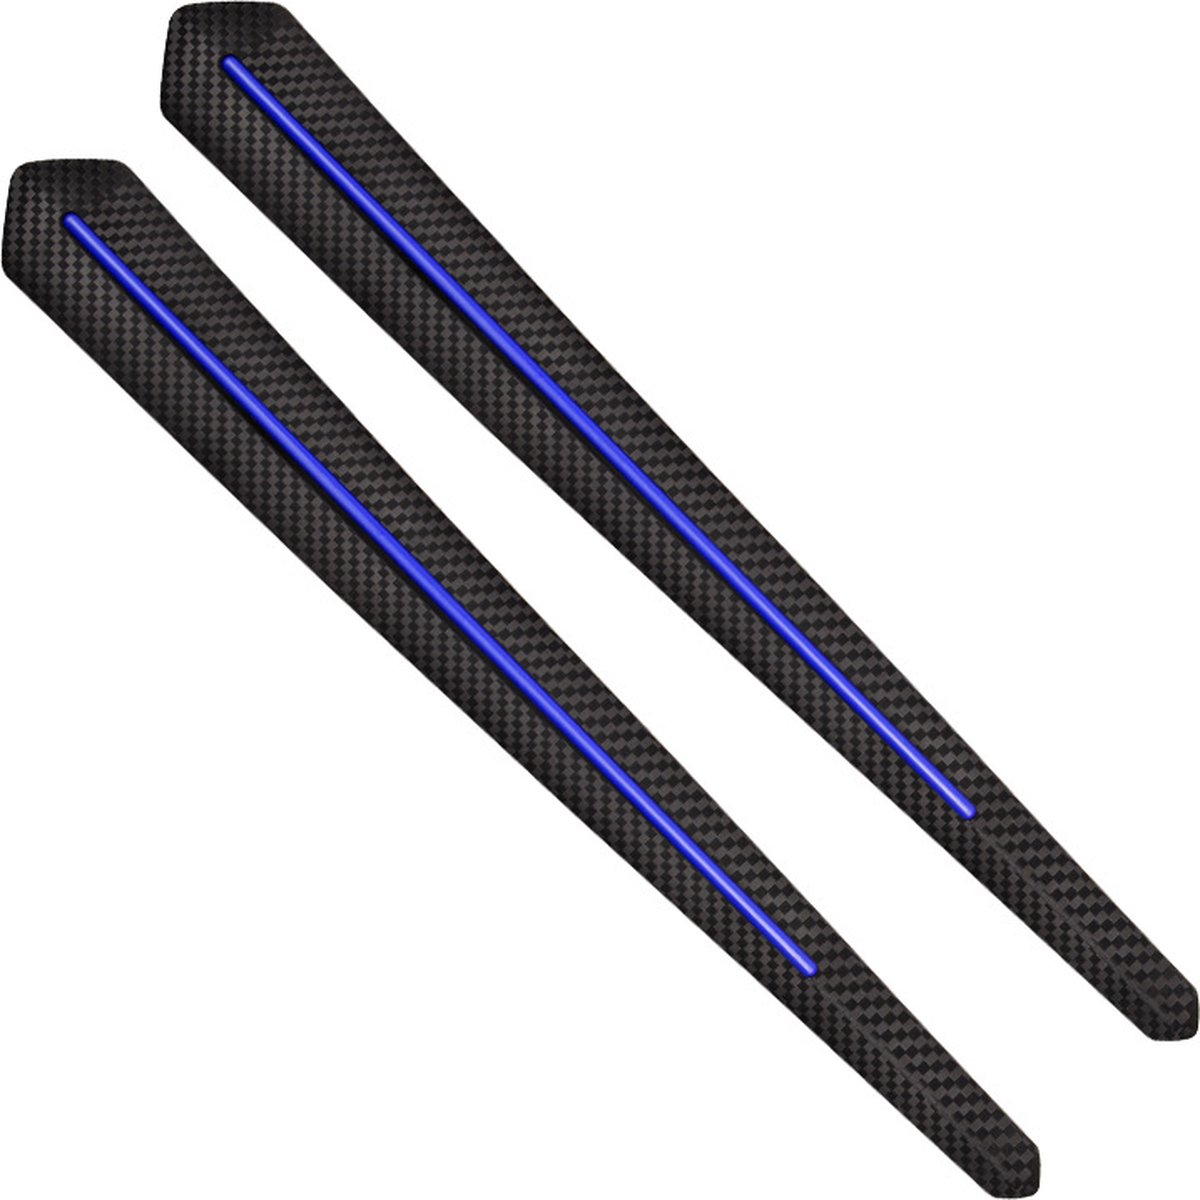 Andyou-1 set van 2 bumper-antikrasstrips - beschermende rubberen stickers op de zijkant van de carrosseriedeur - universeel - blauw en zwart